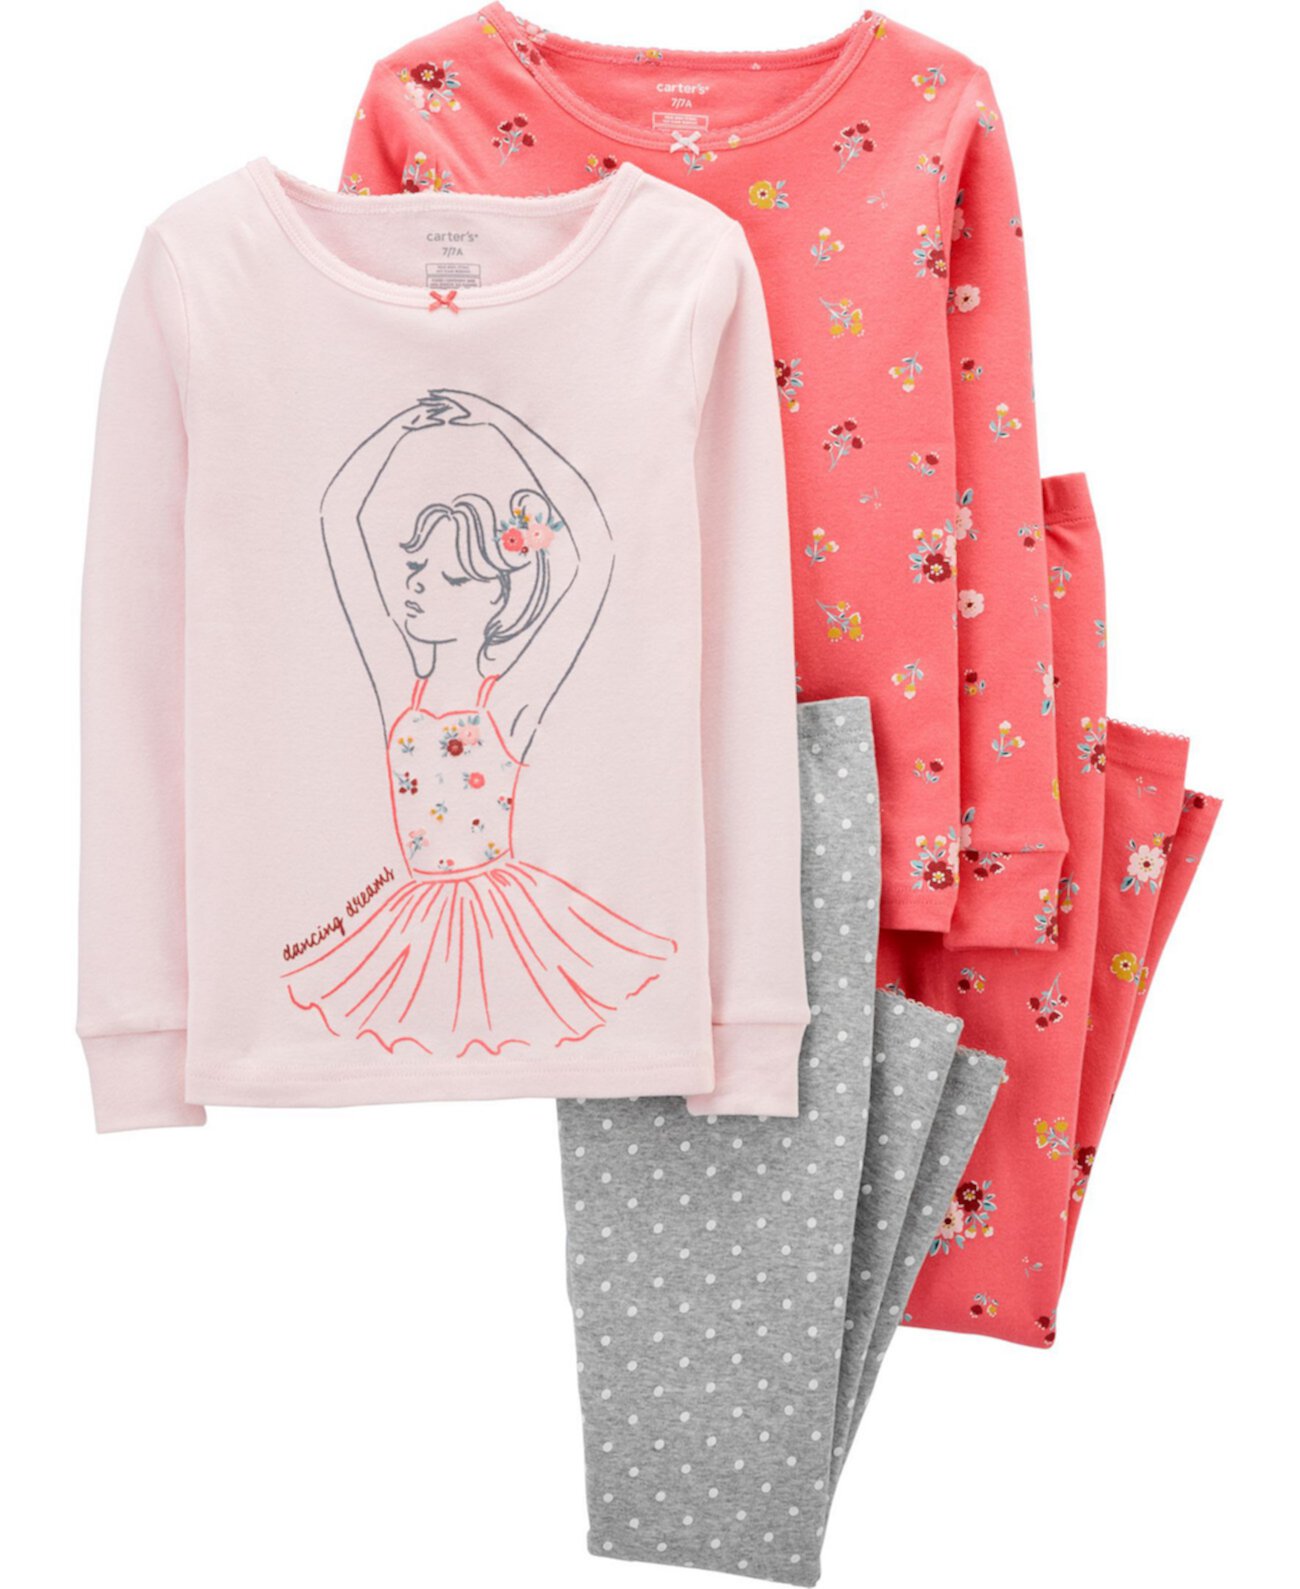 Пижамы из 4 предметов Ballerina плотного кроя из хлопка Big Girl Carter's